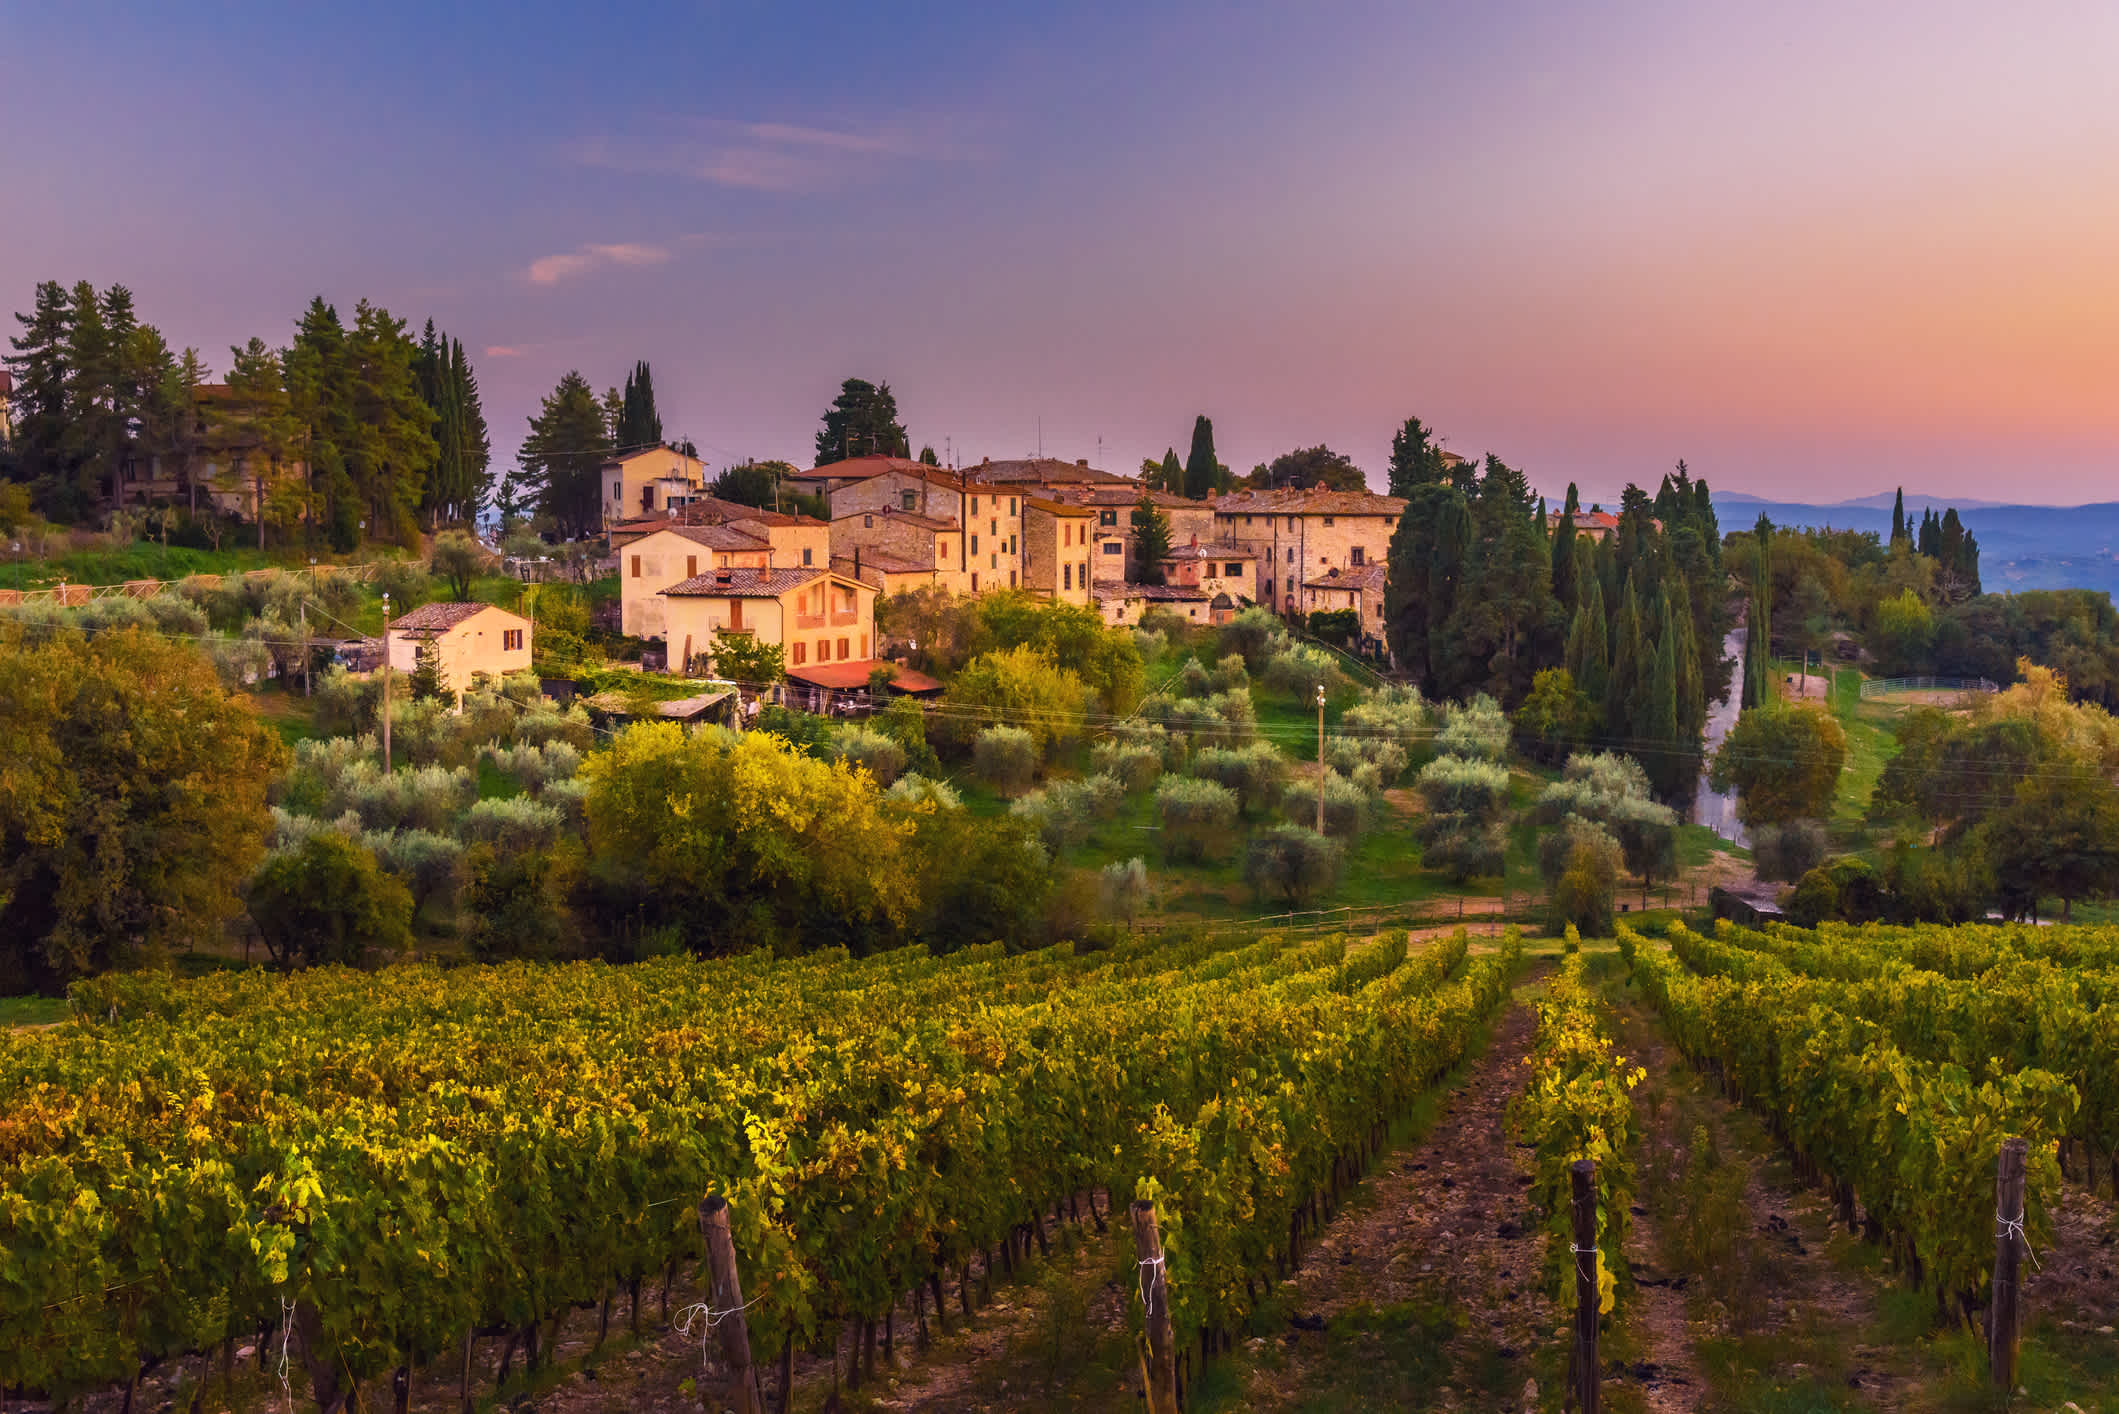 Visitez la région Chianti pendant votre séjour en Toscane et goûtez aux vins du même nom.